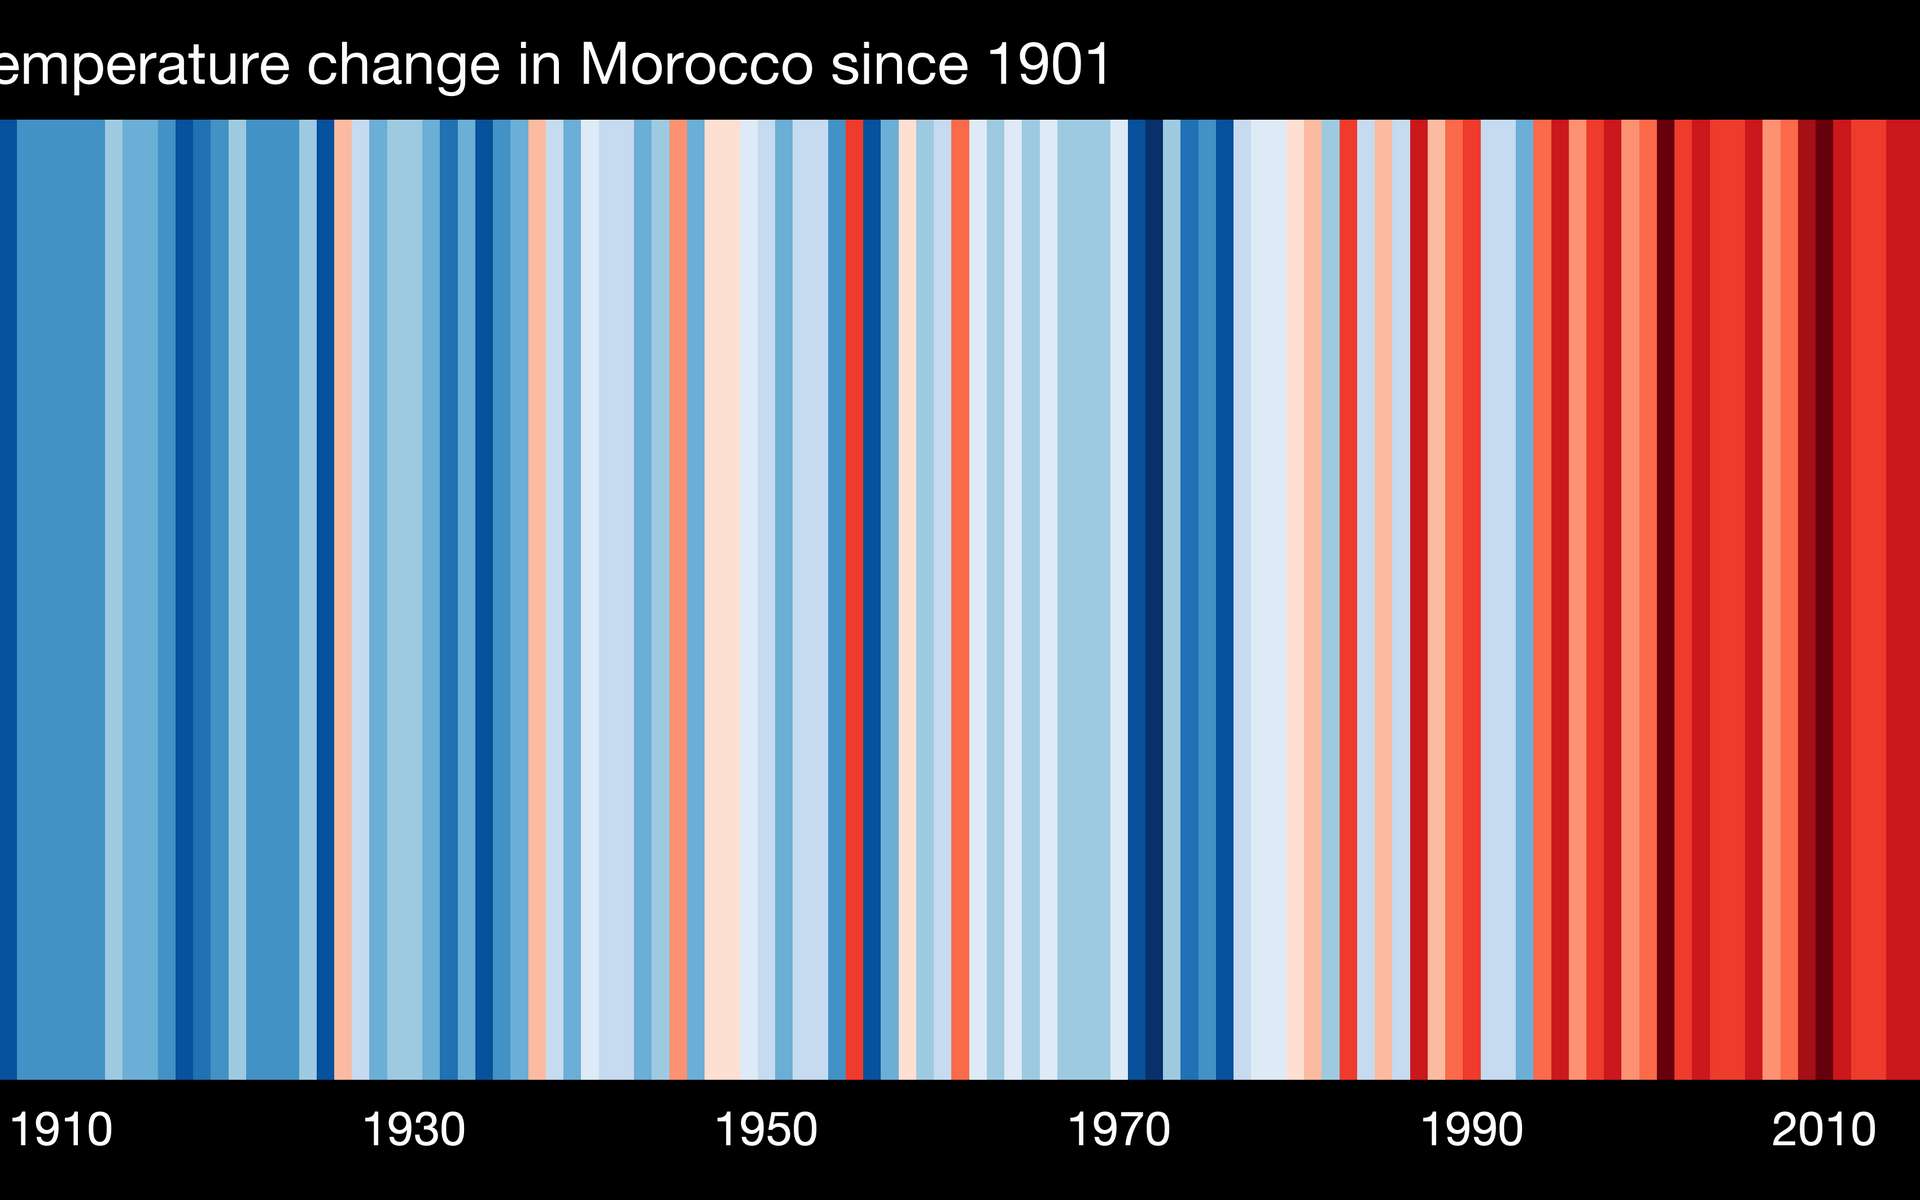 Connaissez-vous les « warming stripes » qui vous montrent le réchauffement climatique dans votre région depuis 1901 ?